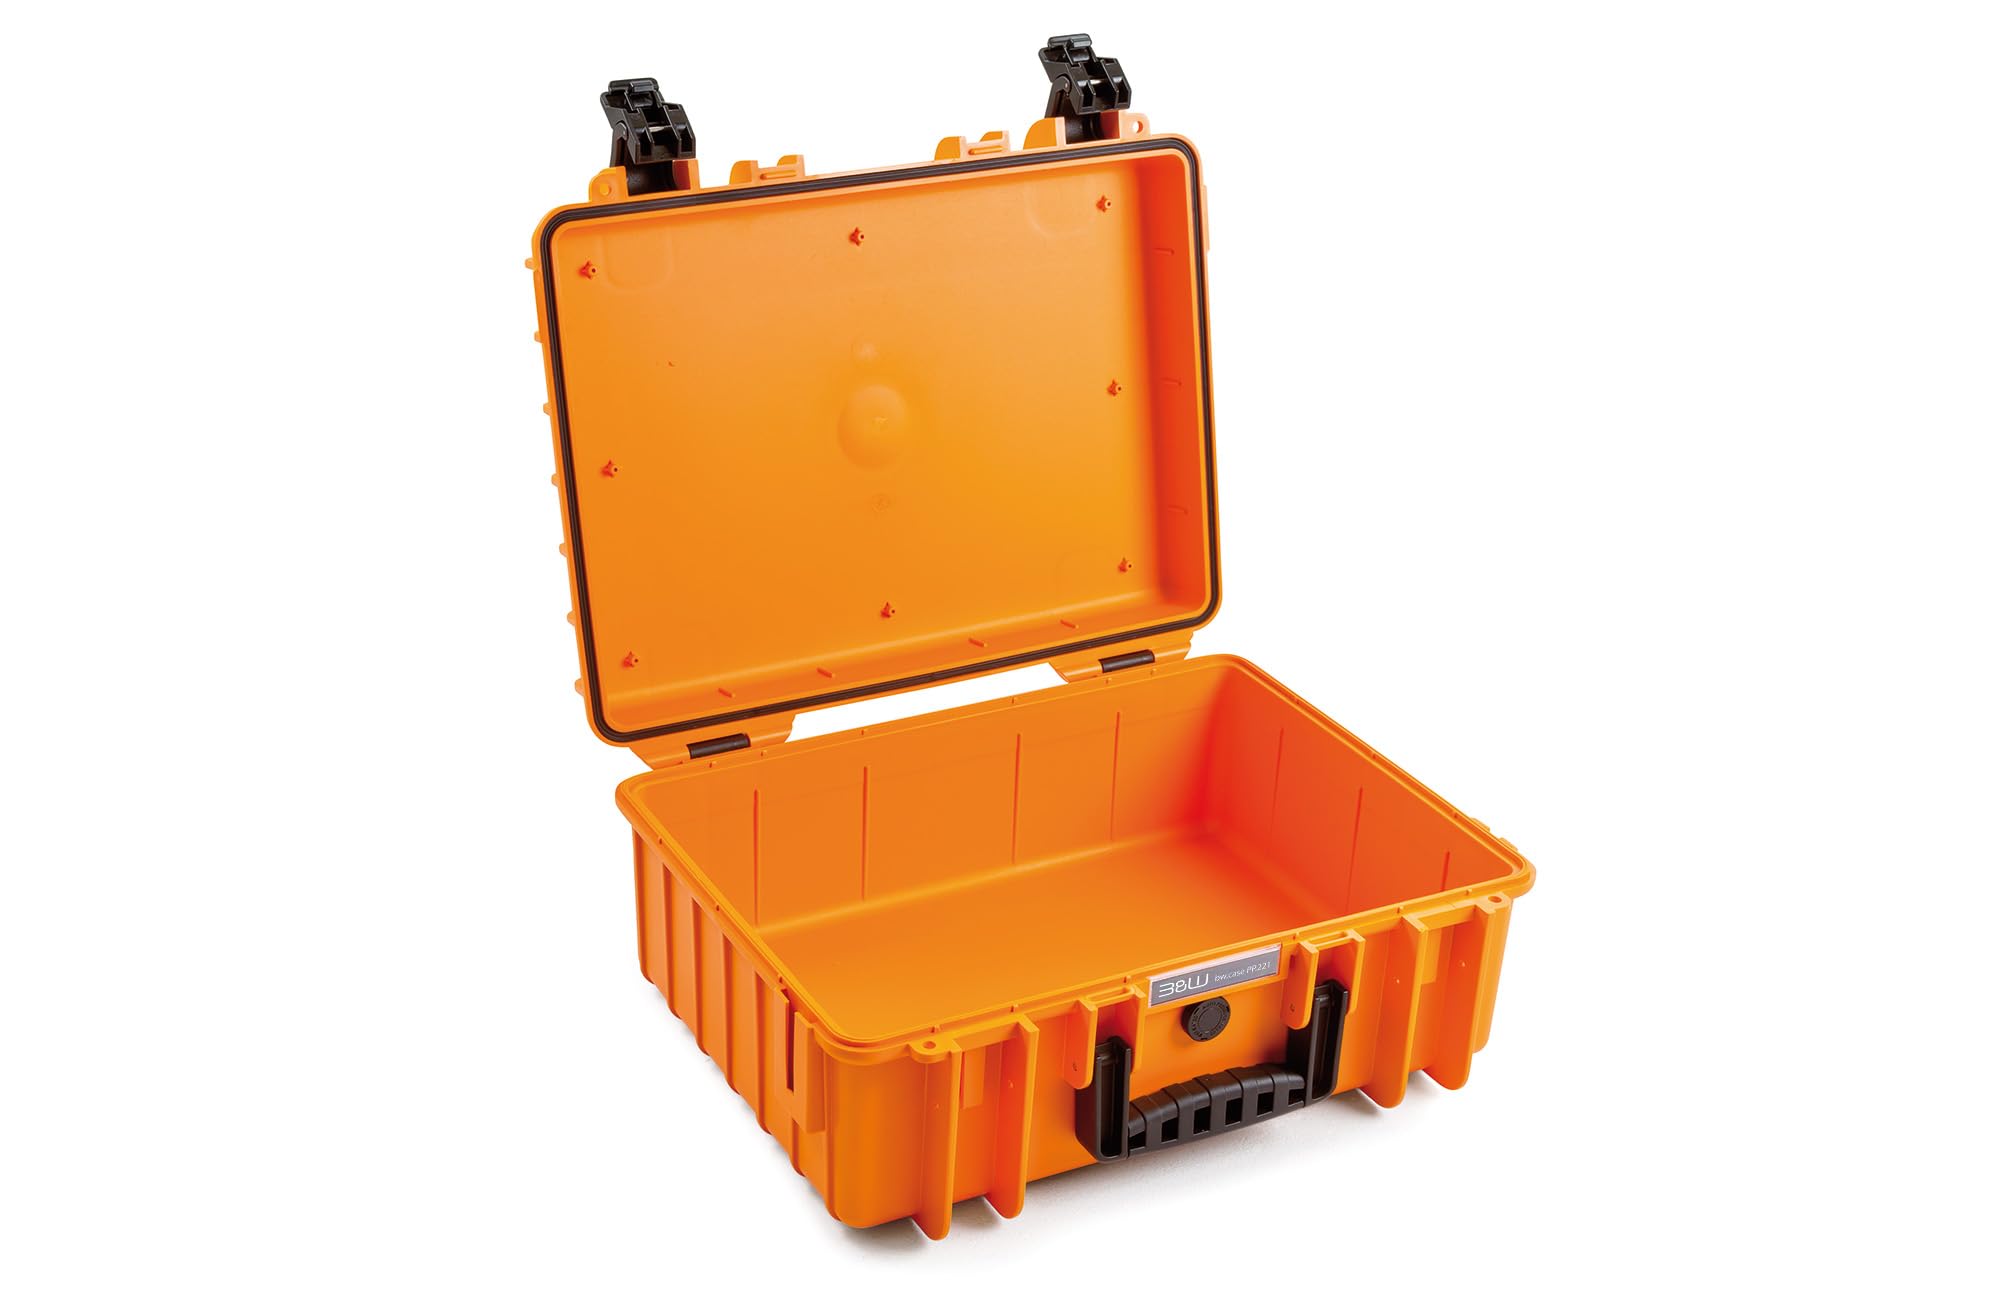 B&W Transportkoffer Outdoor - Typ 5000 Orange - wasserdicht nach IP67 Zertifizierung, staubdicht, bruchsicher und unverwüstlich